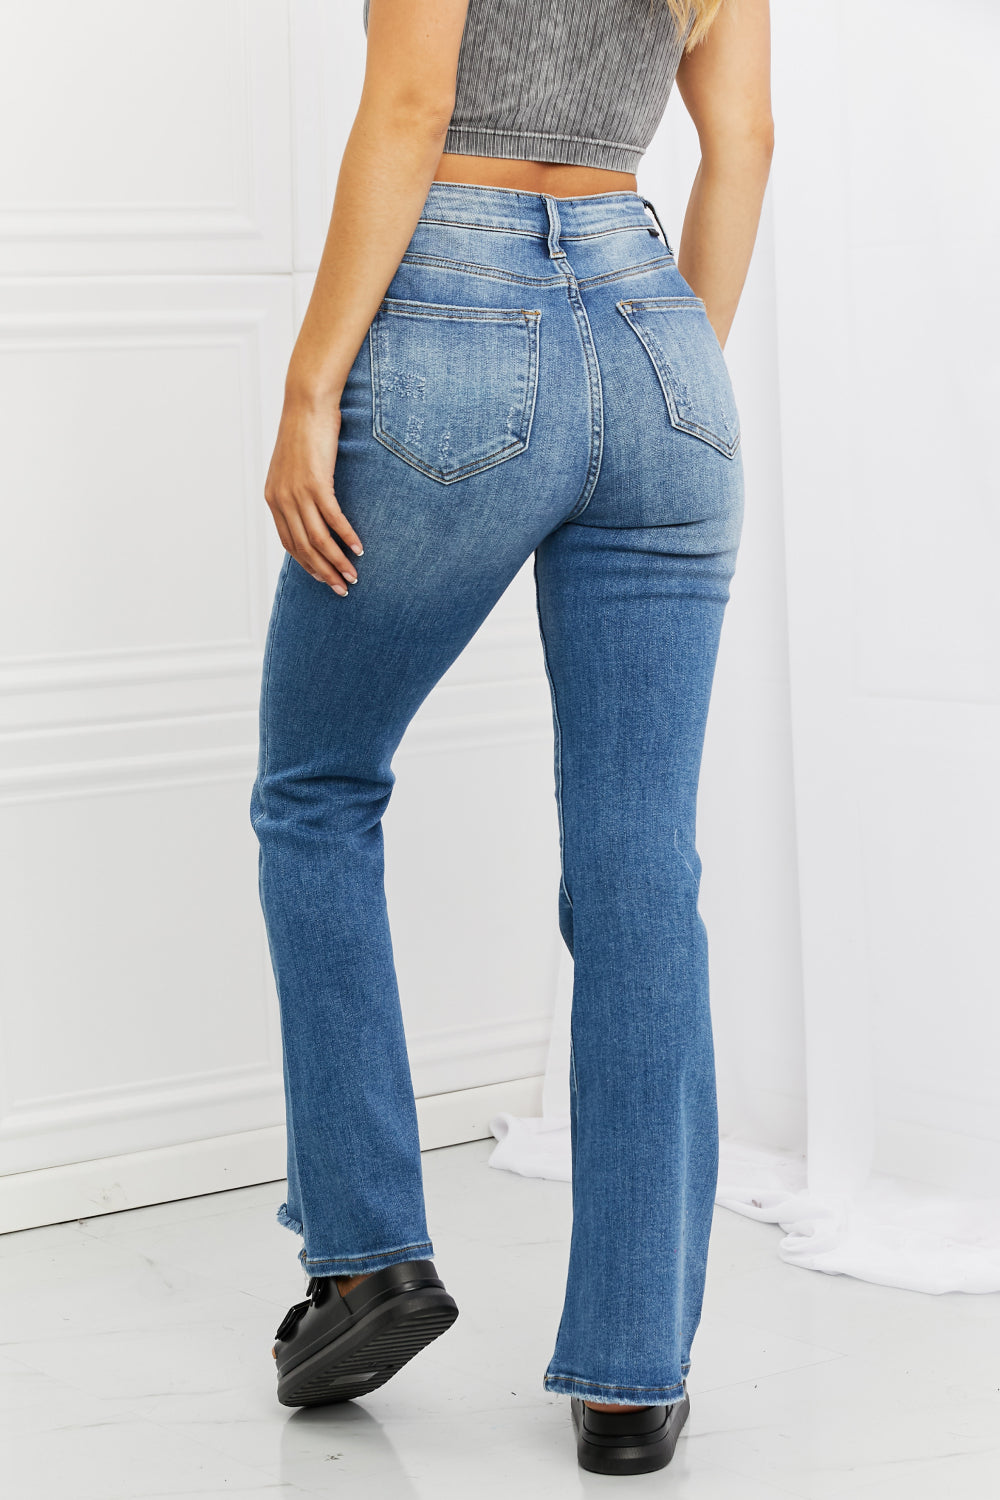 RISEN Iris High Waisted Flare Jeans-Trendsi-[option4]-[option5]-[option6]-[option7]-[option8]-Shop-Boutique-Clothing-for-Women-Online